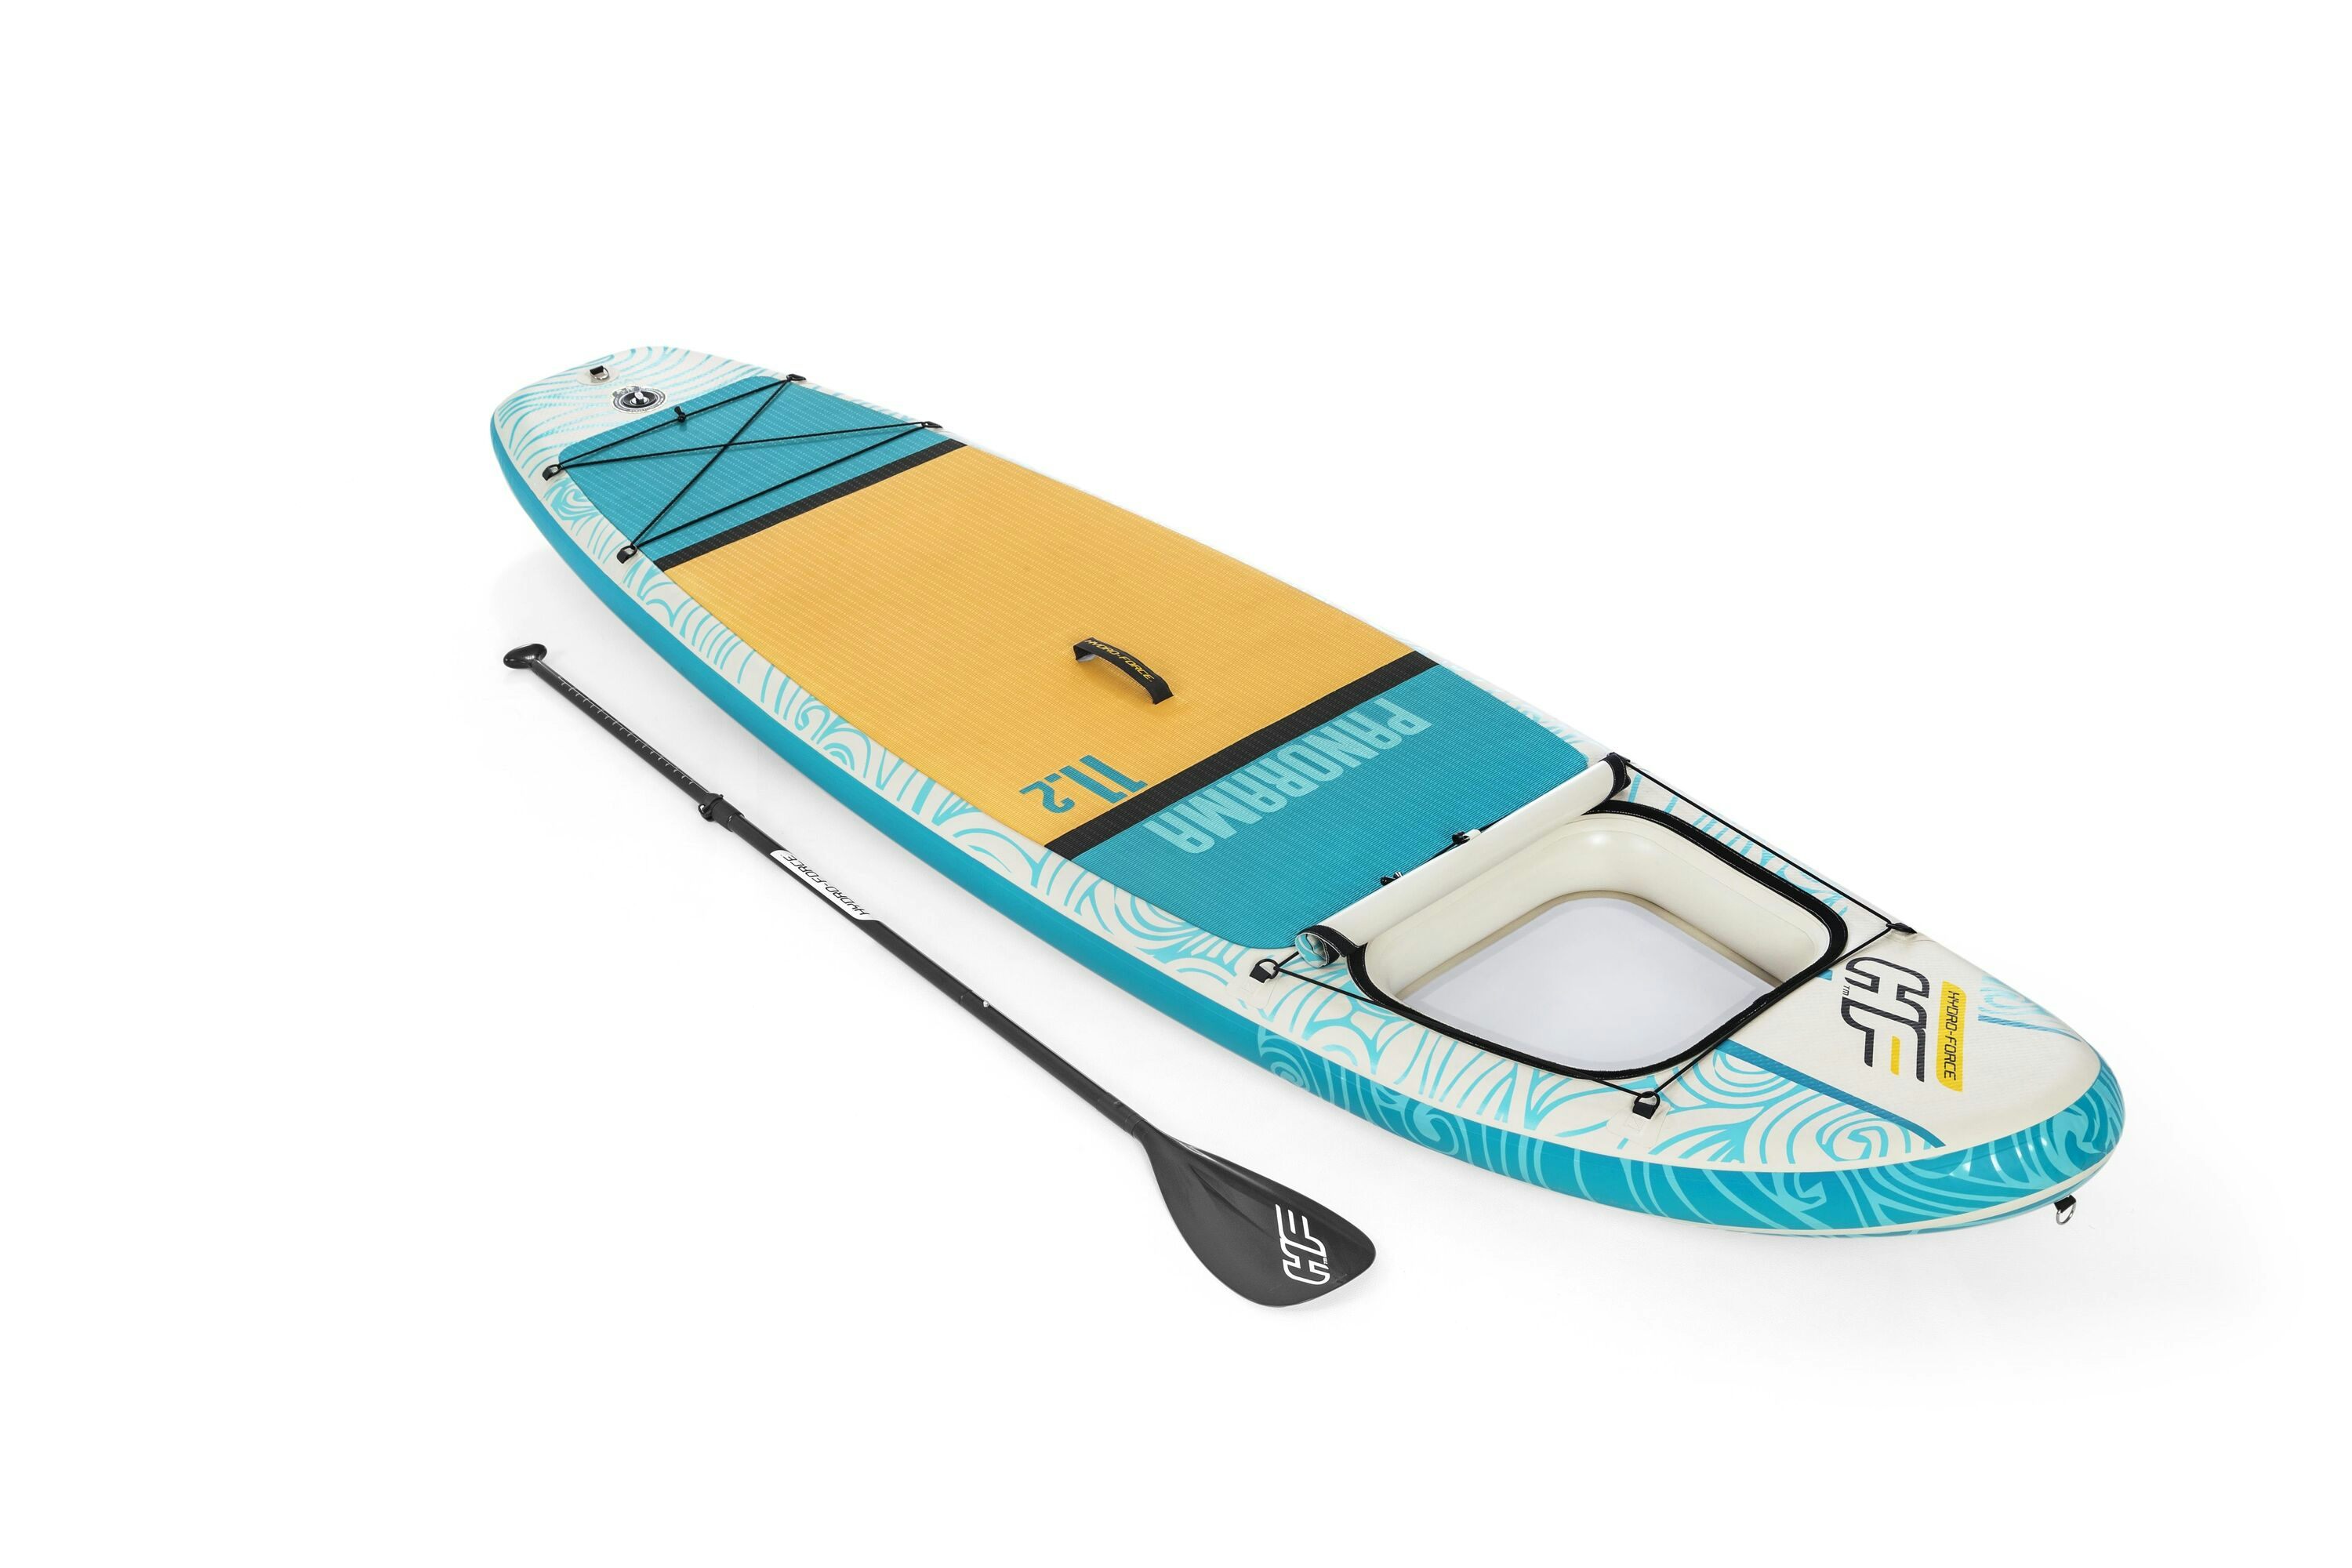 Sports d'eau Paddle gonflable Panorama Hydro-force™, 340 x 89 x 15 cm, 150 kg max, fenêtre transparente, poignées de transport, pompe, leash, sac de transport et pagaie Bestway 1